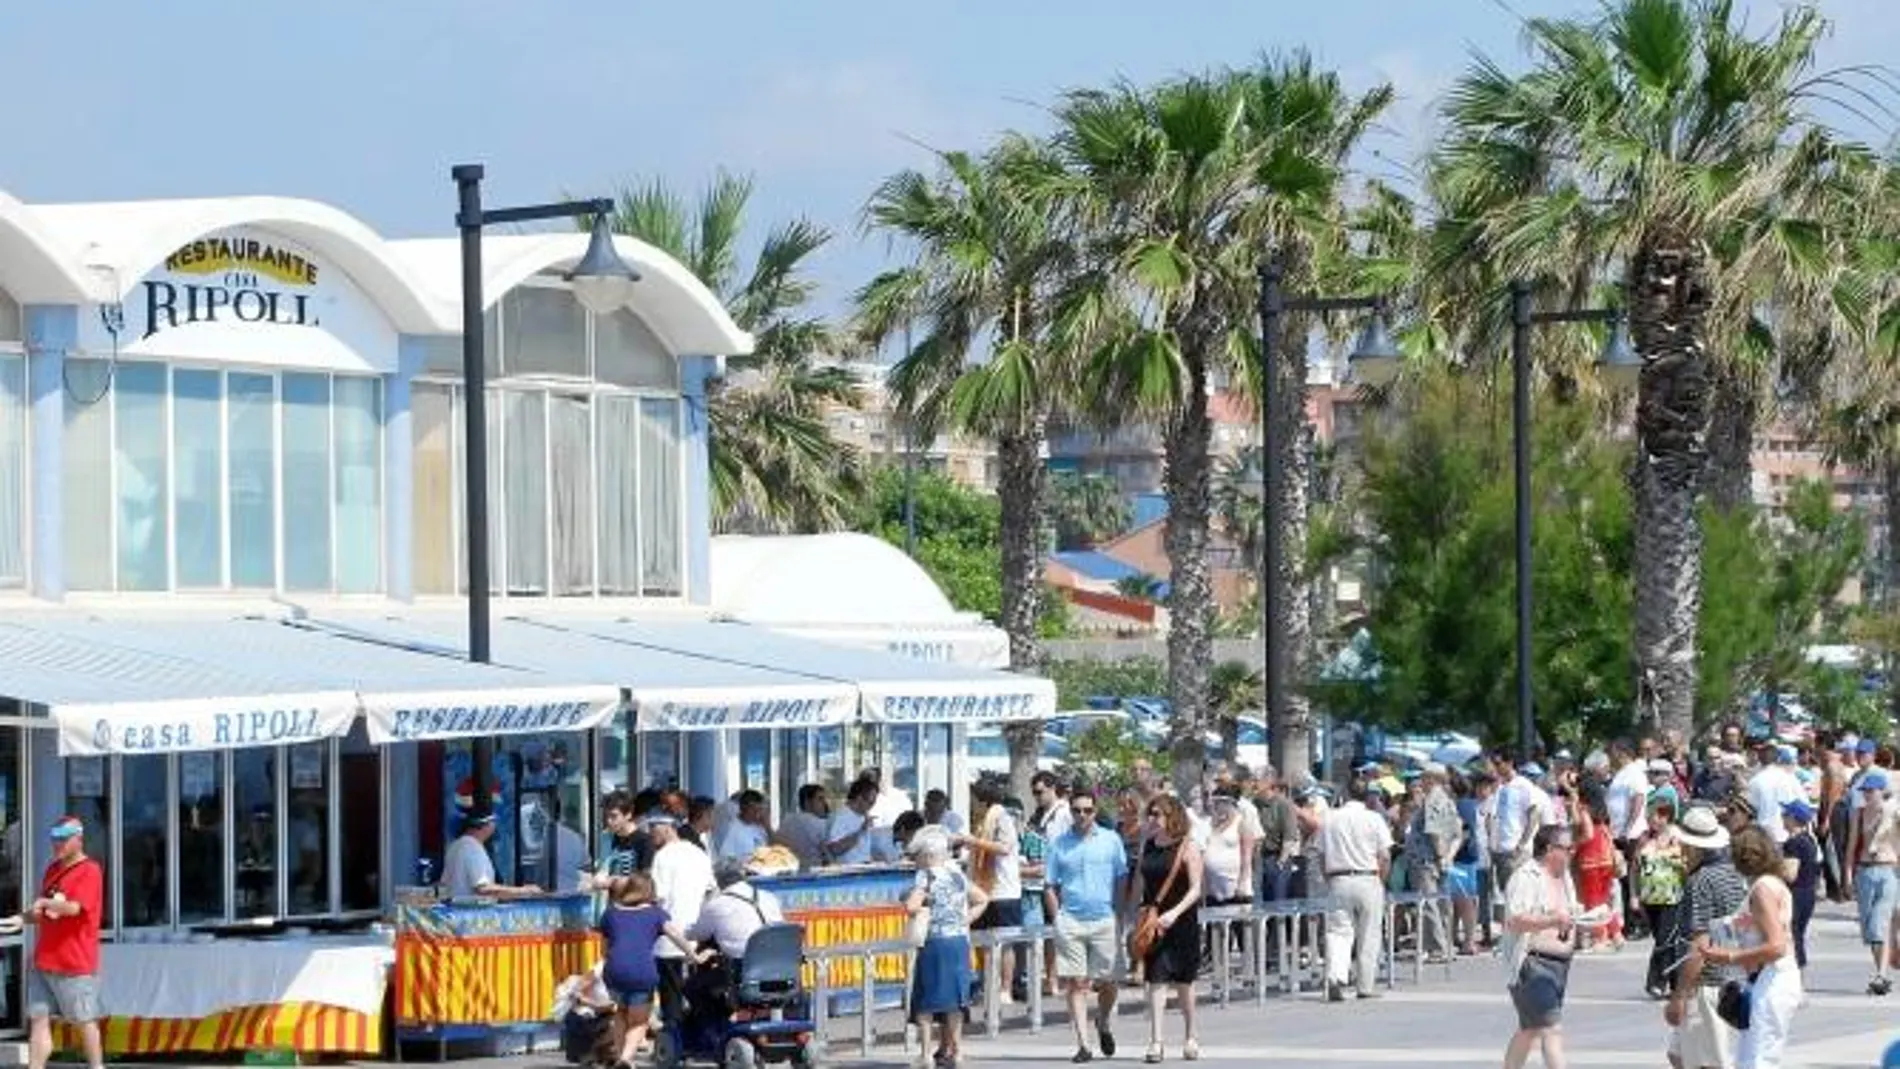 Uno de los actos celebrados por los hosteleros en defensa del modelo de locales cercanos a la playa y cuyas terrazas son objeto de polémica